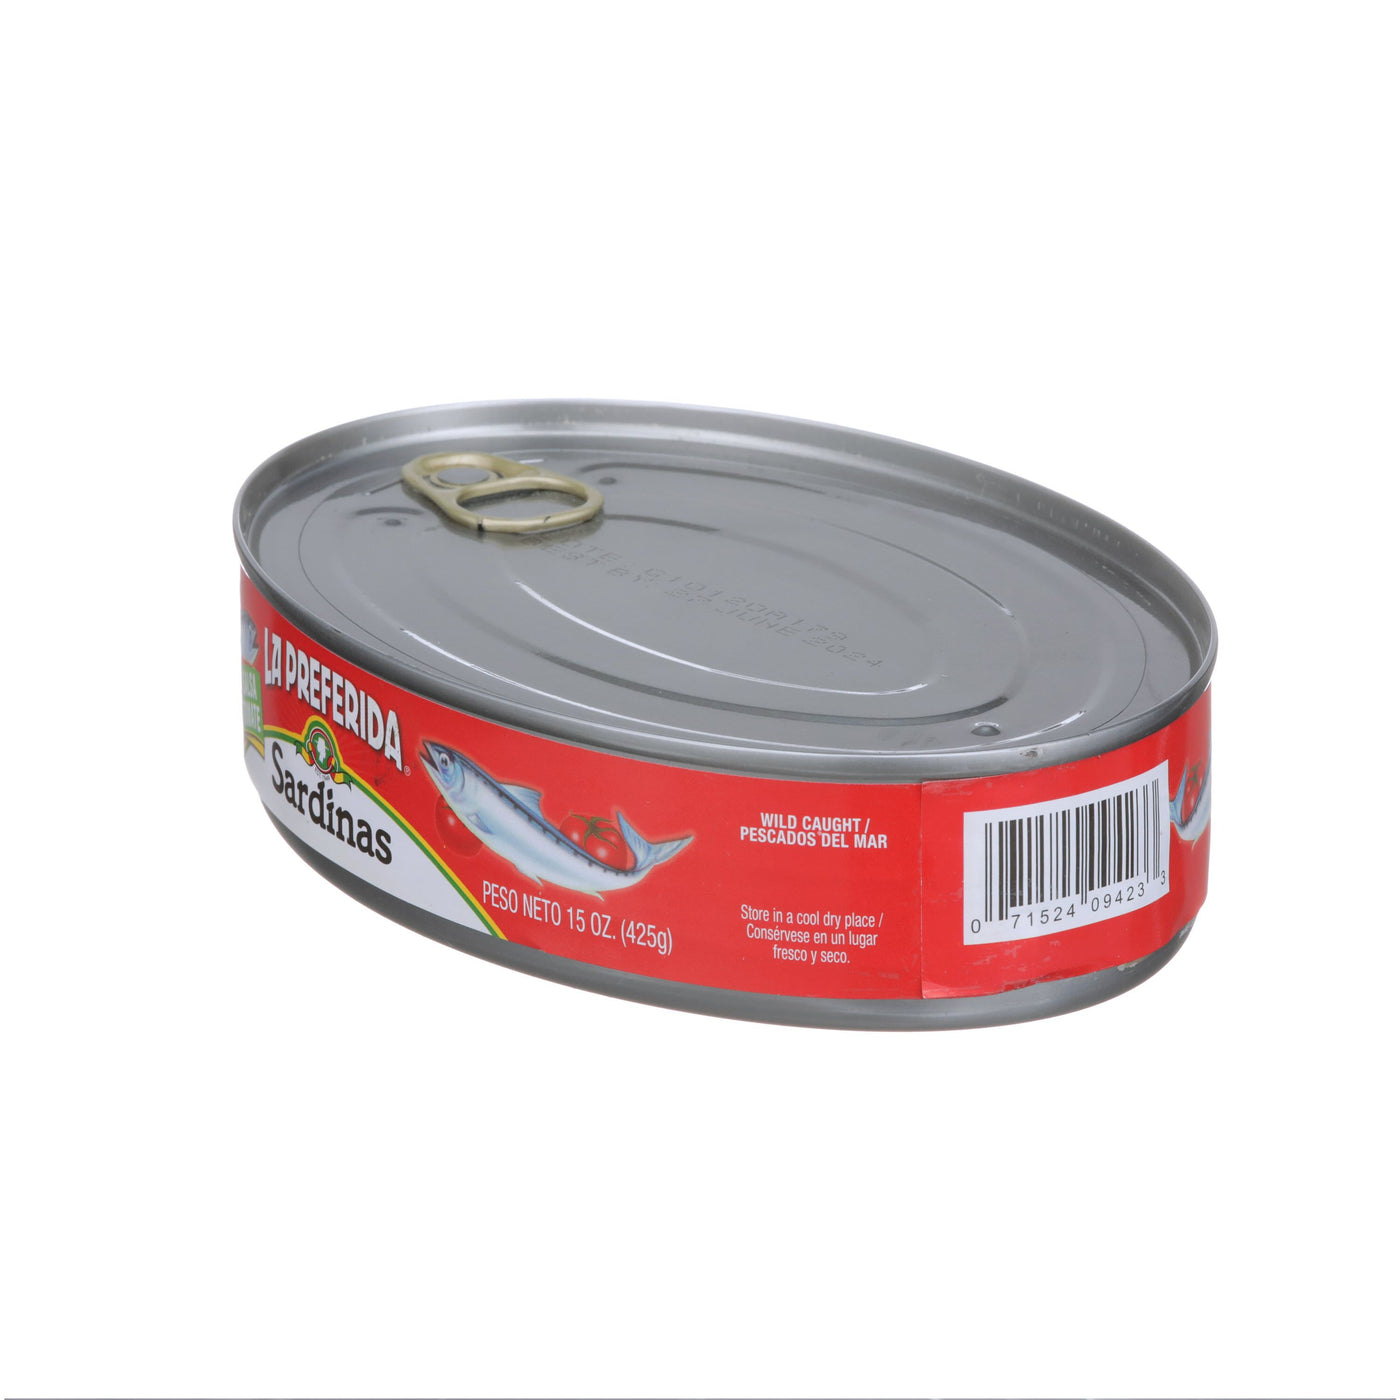 Review #99 Real Conservera sardinas : r/CannedSardines